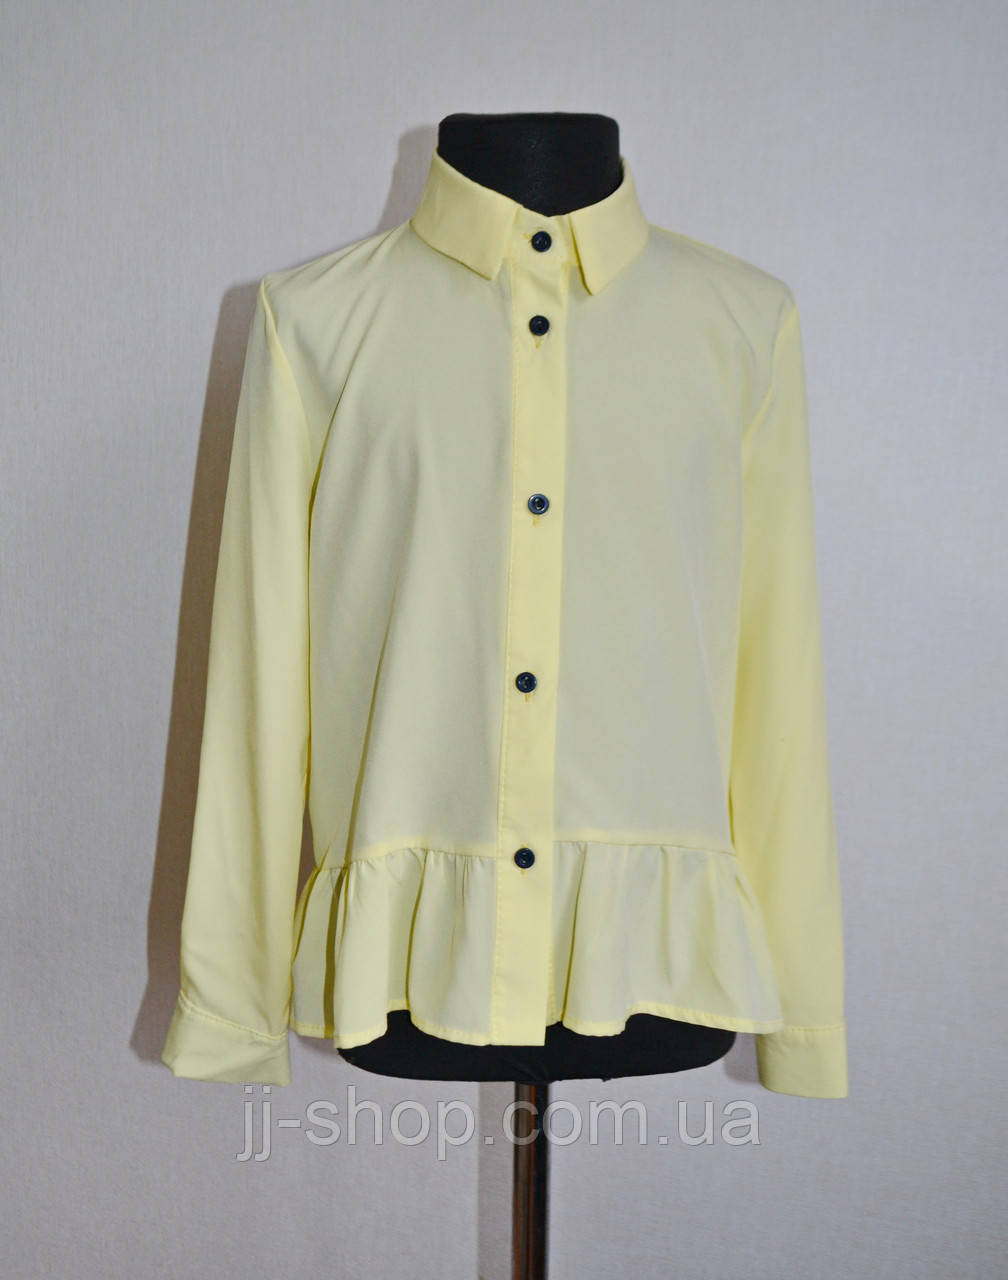 Дитяча шкільна блузка (сорочка) для дівчаток 5-10 років лимонного кольору